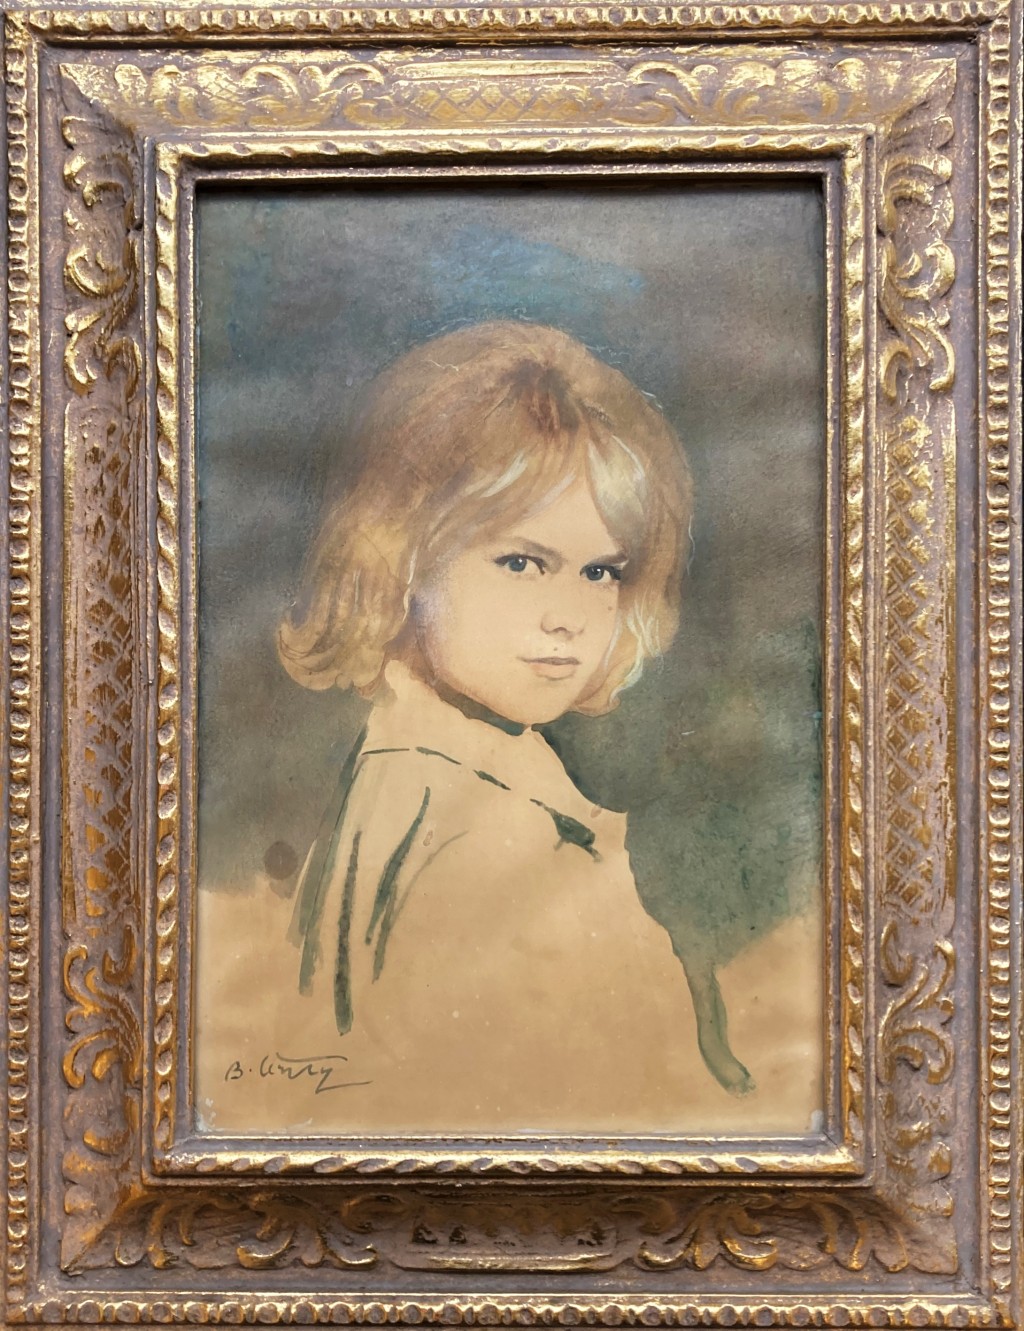 Černý Bedřich (1889 - ?) : Portrét dívky